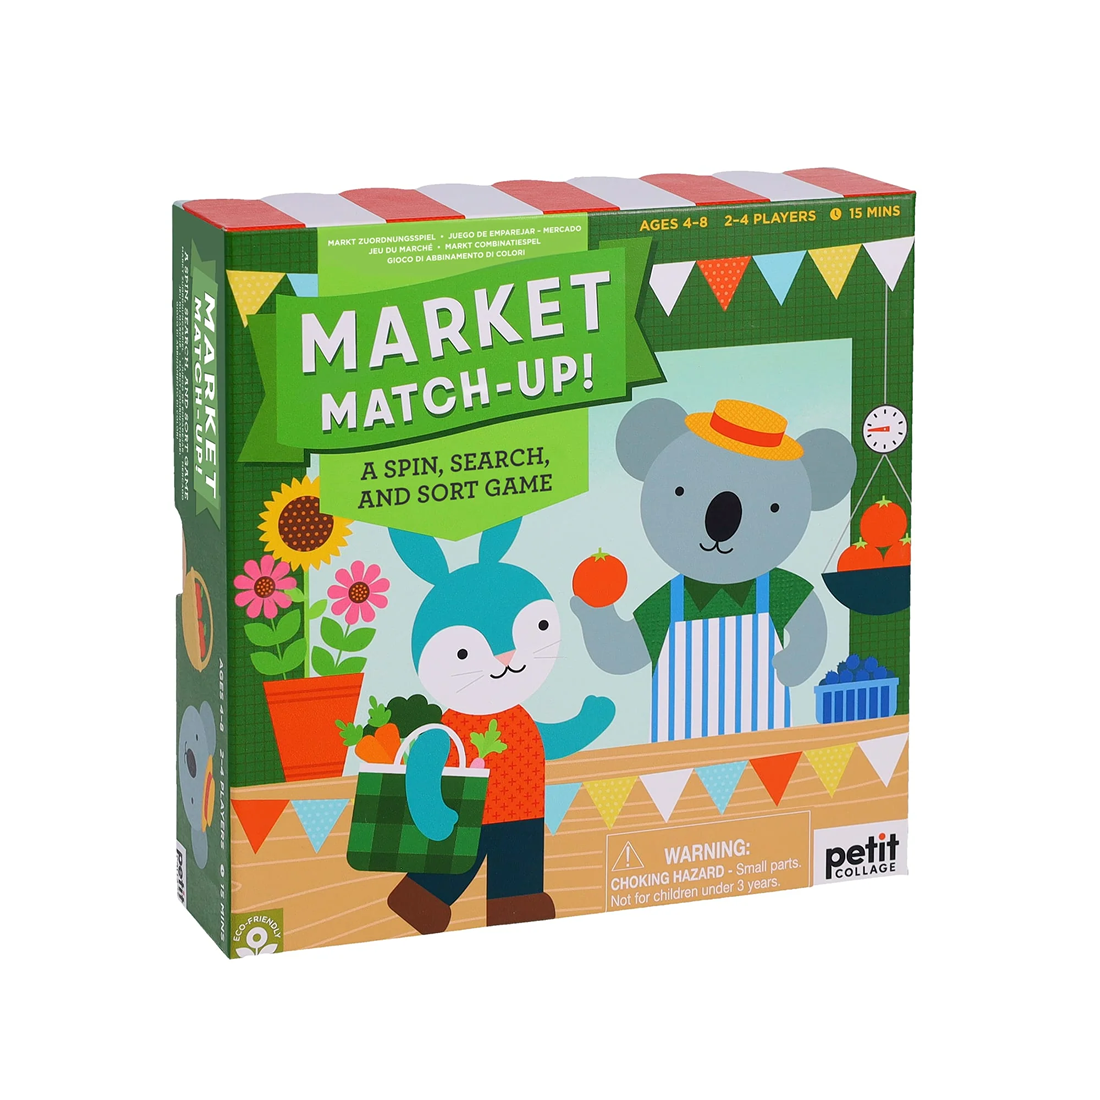 Joc de atentie - Market Match-Up! - Petit Collage